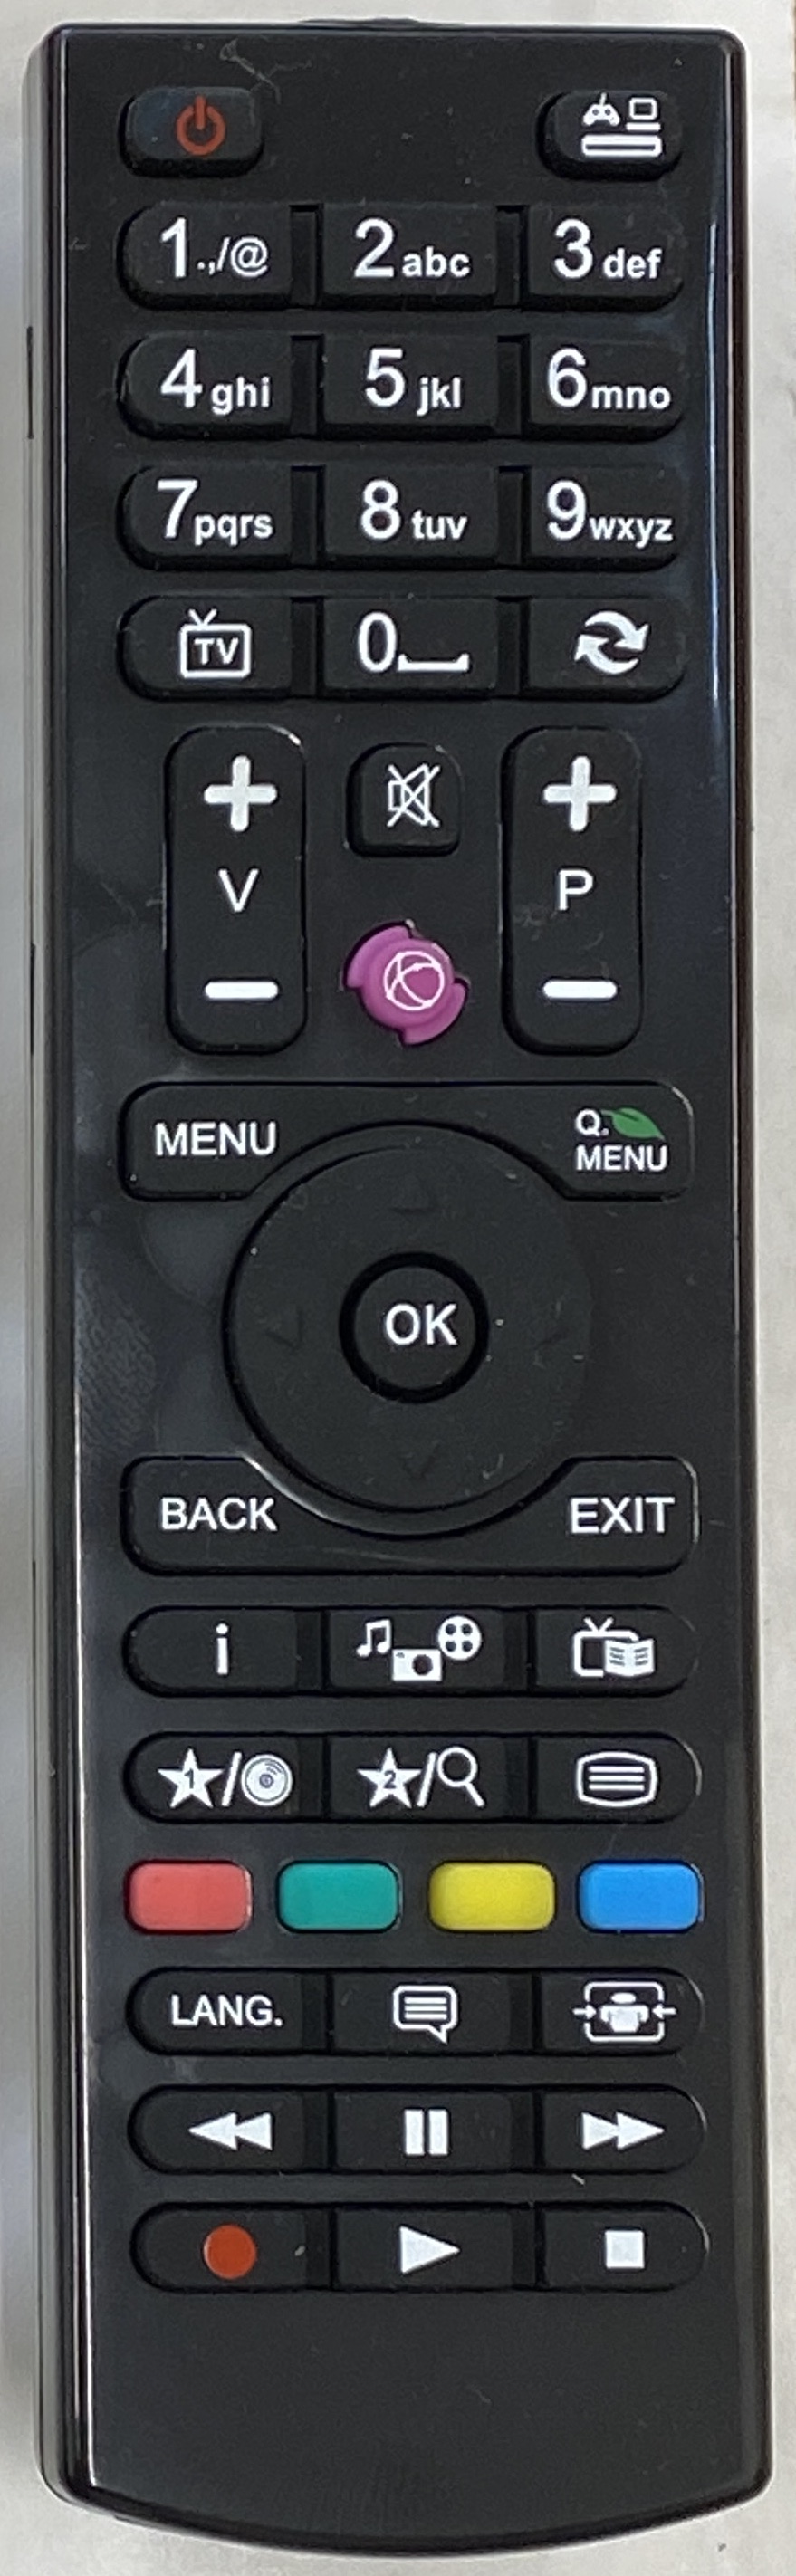 BUSH LCD40883F1080P Remote Control Original